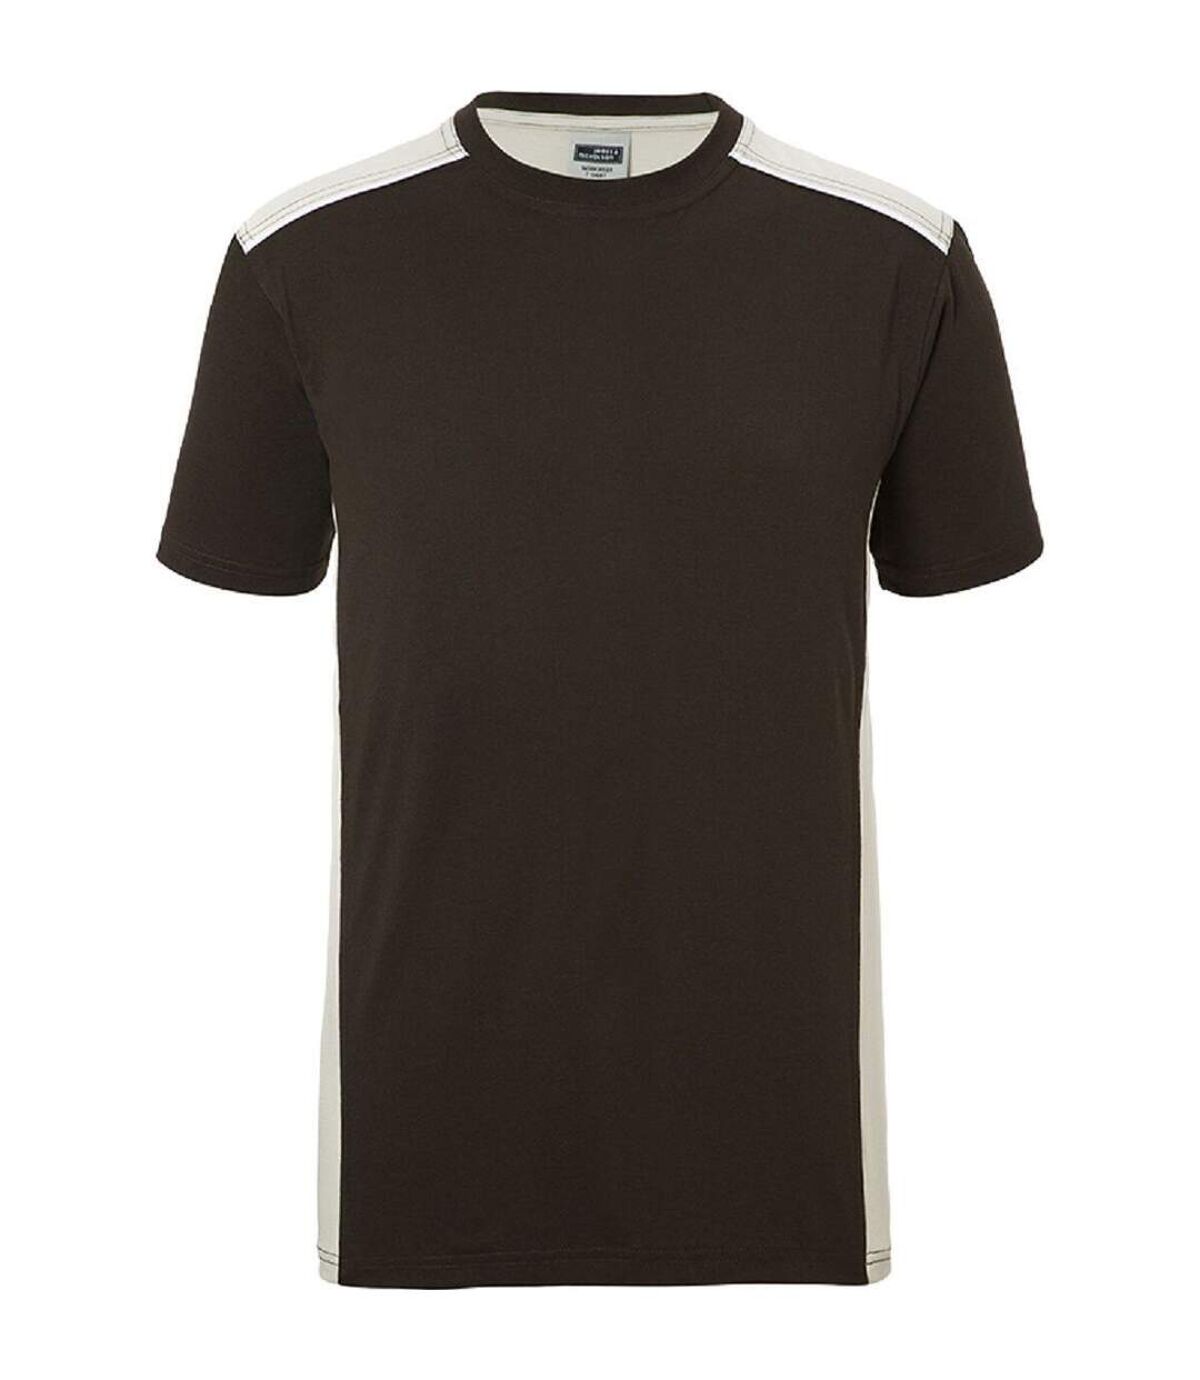 T-shirt de travail manches courtes - Homme - JN860 - marron